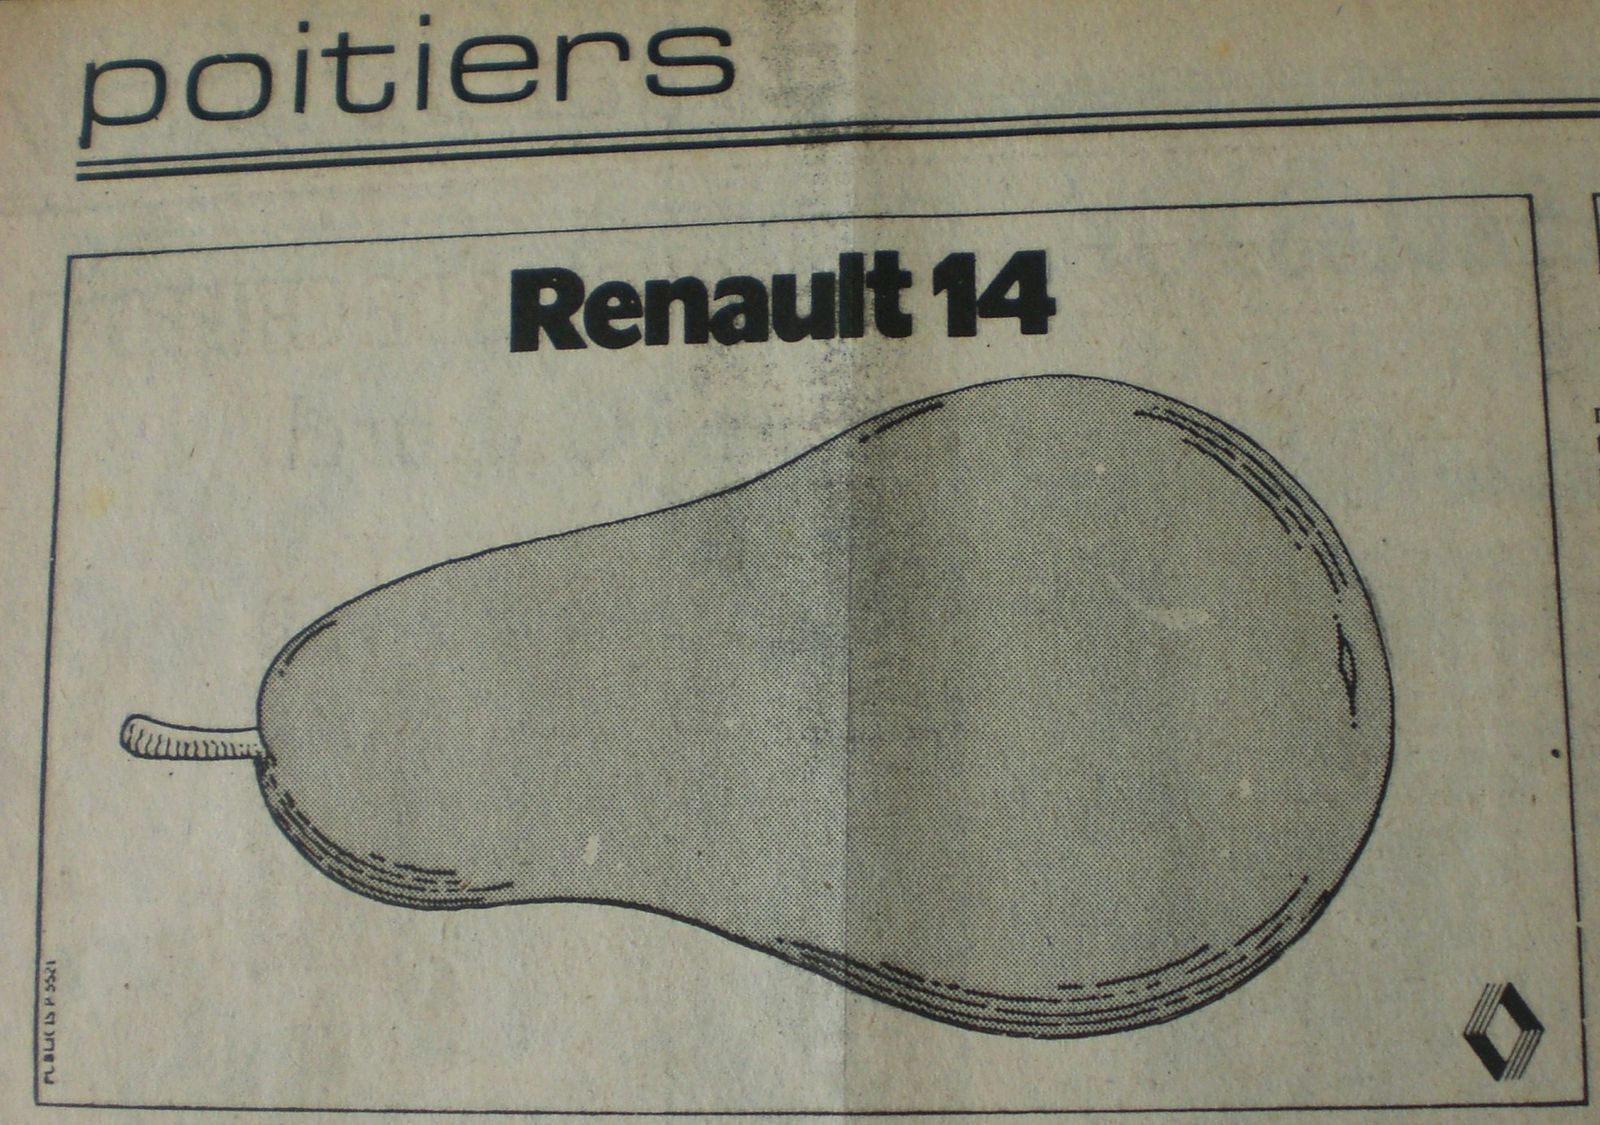 Publicite-Poire-Renault-14.JPG